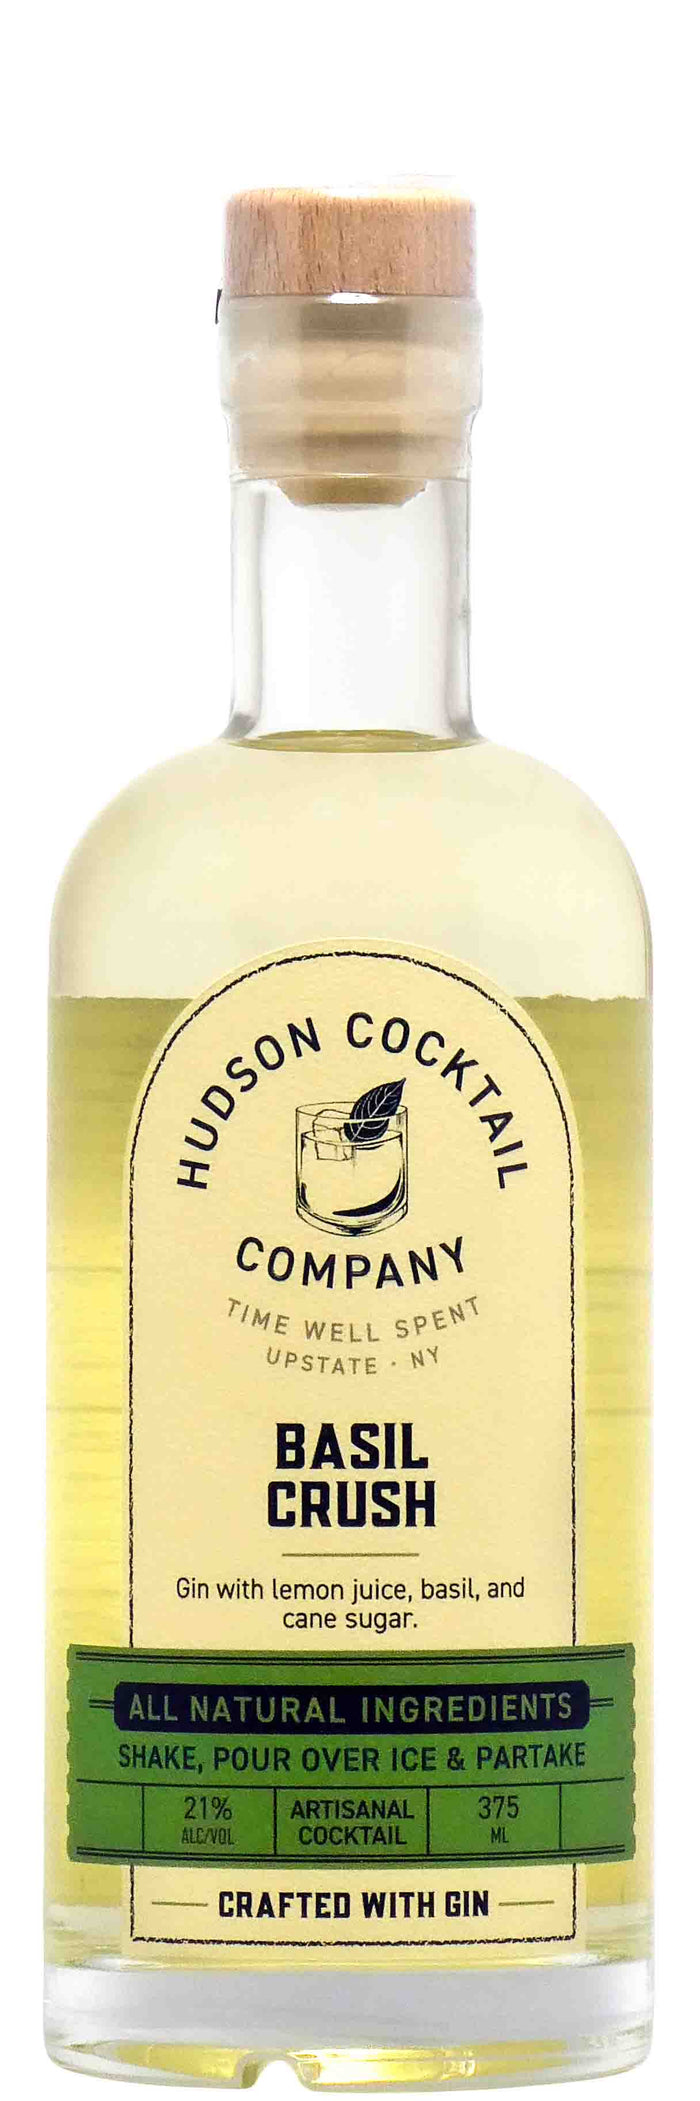 Hudson Cocktail Co. Basil Crush